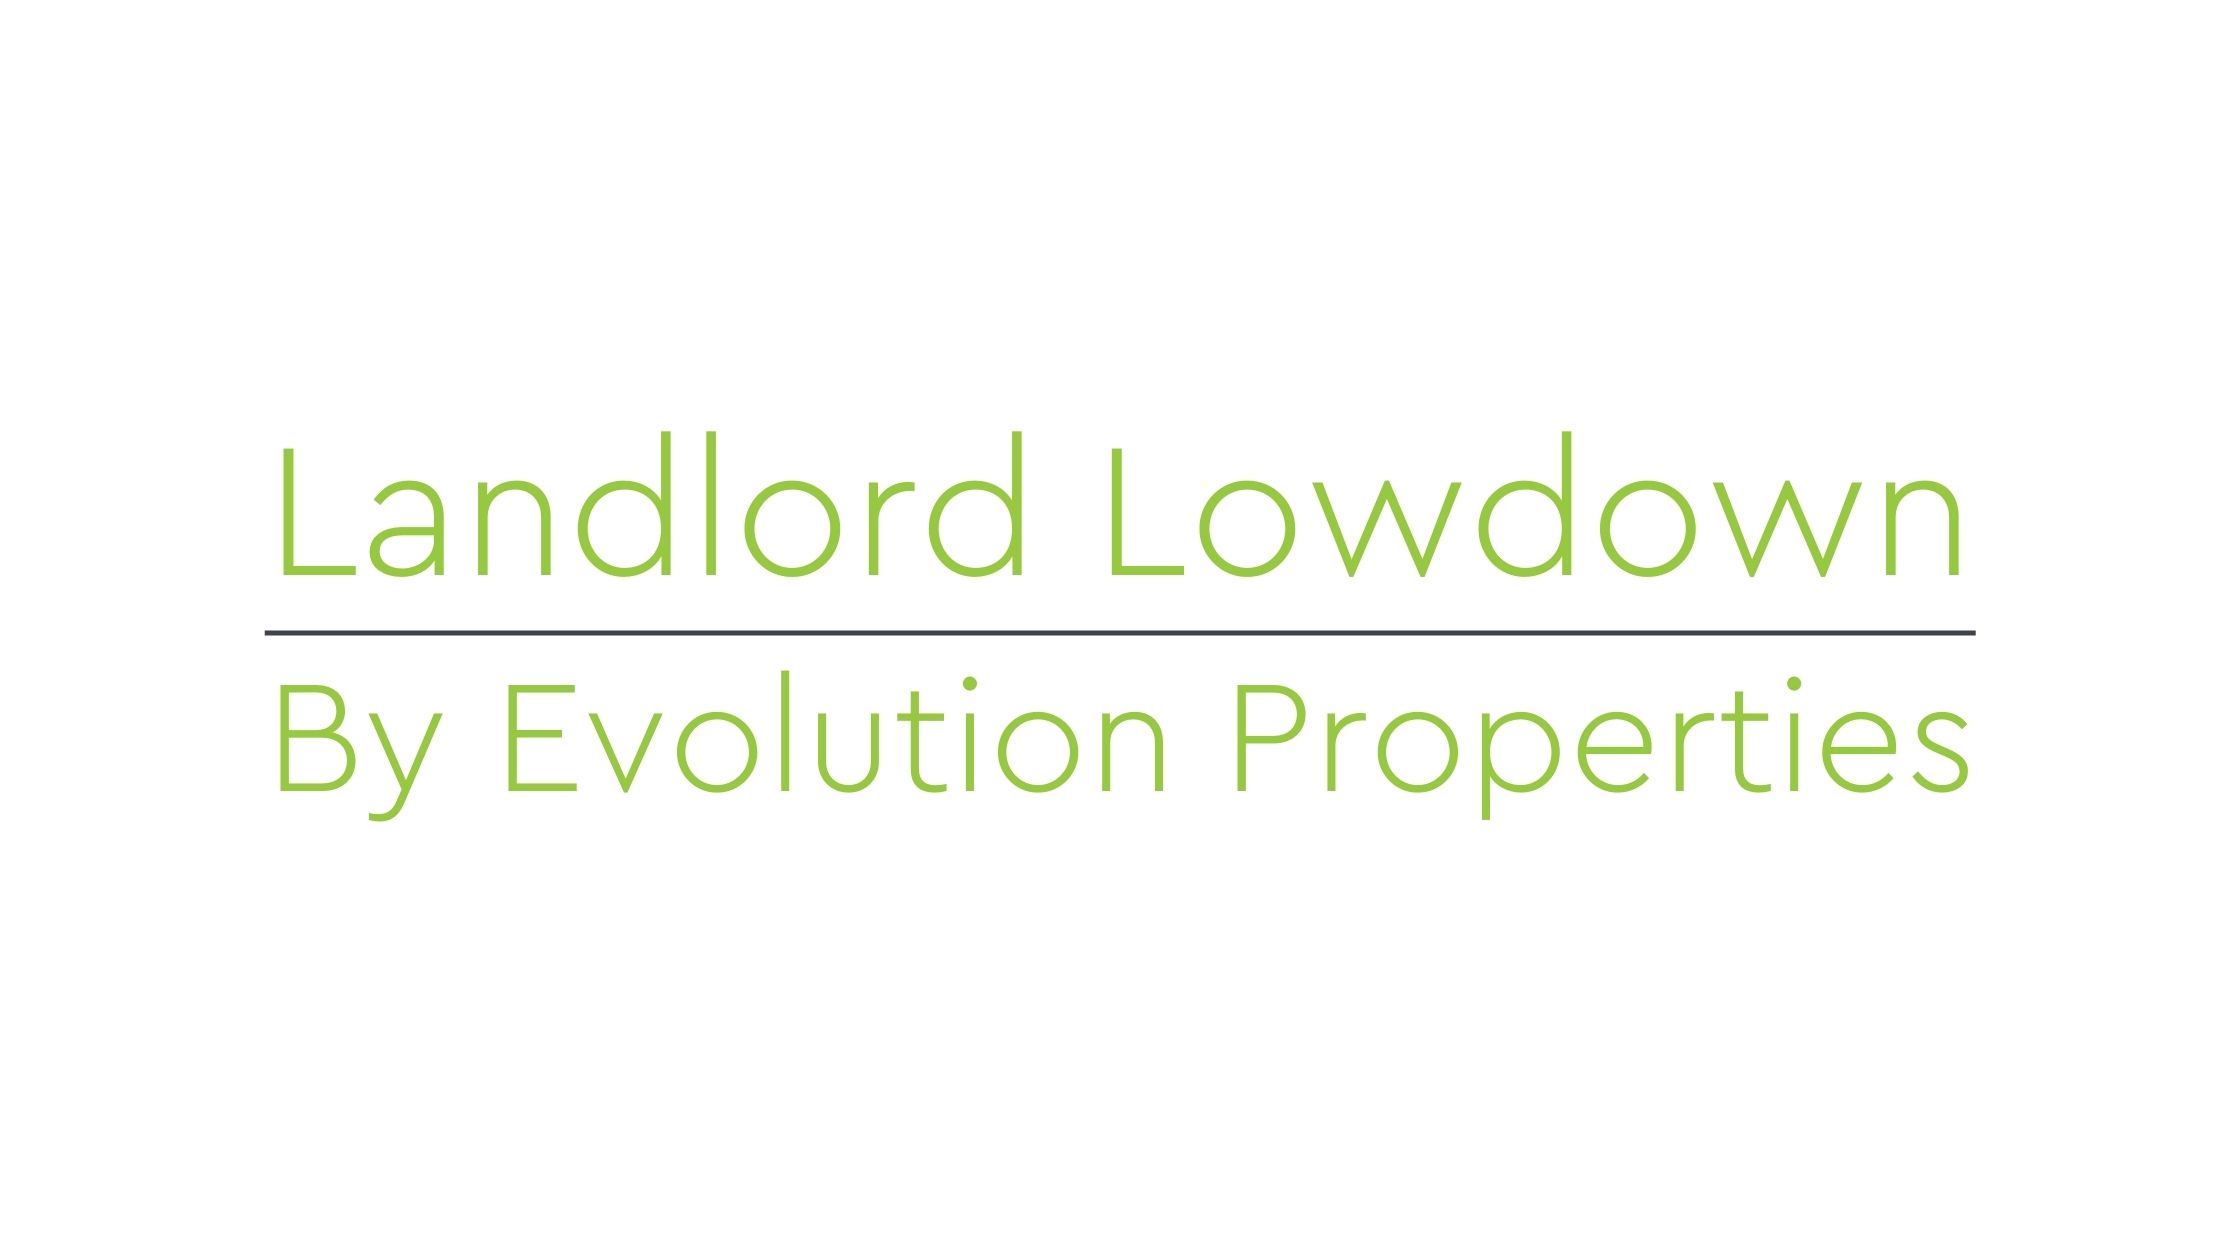 Landlord Lowdown!